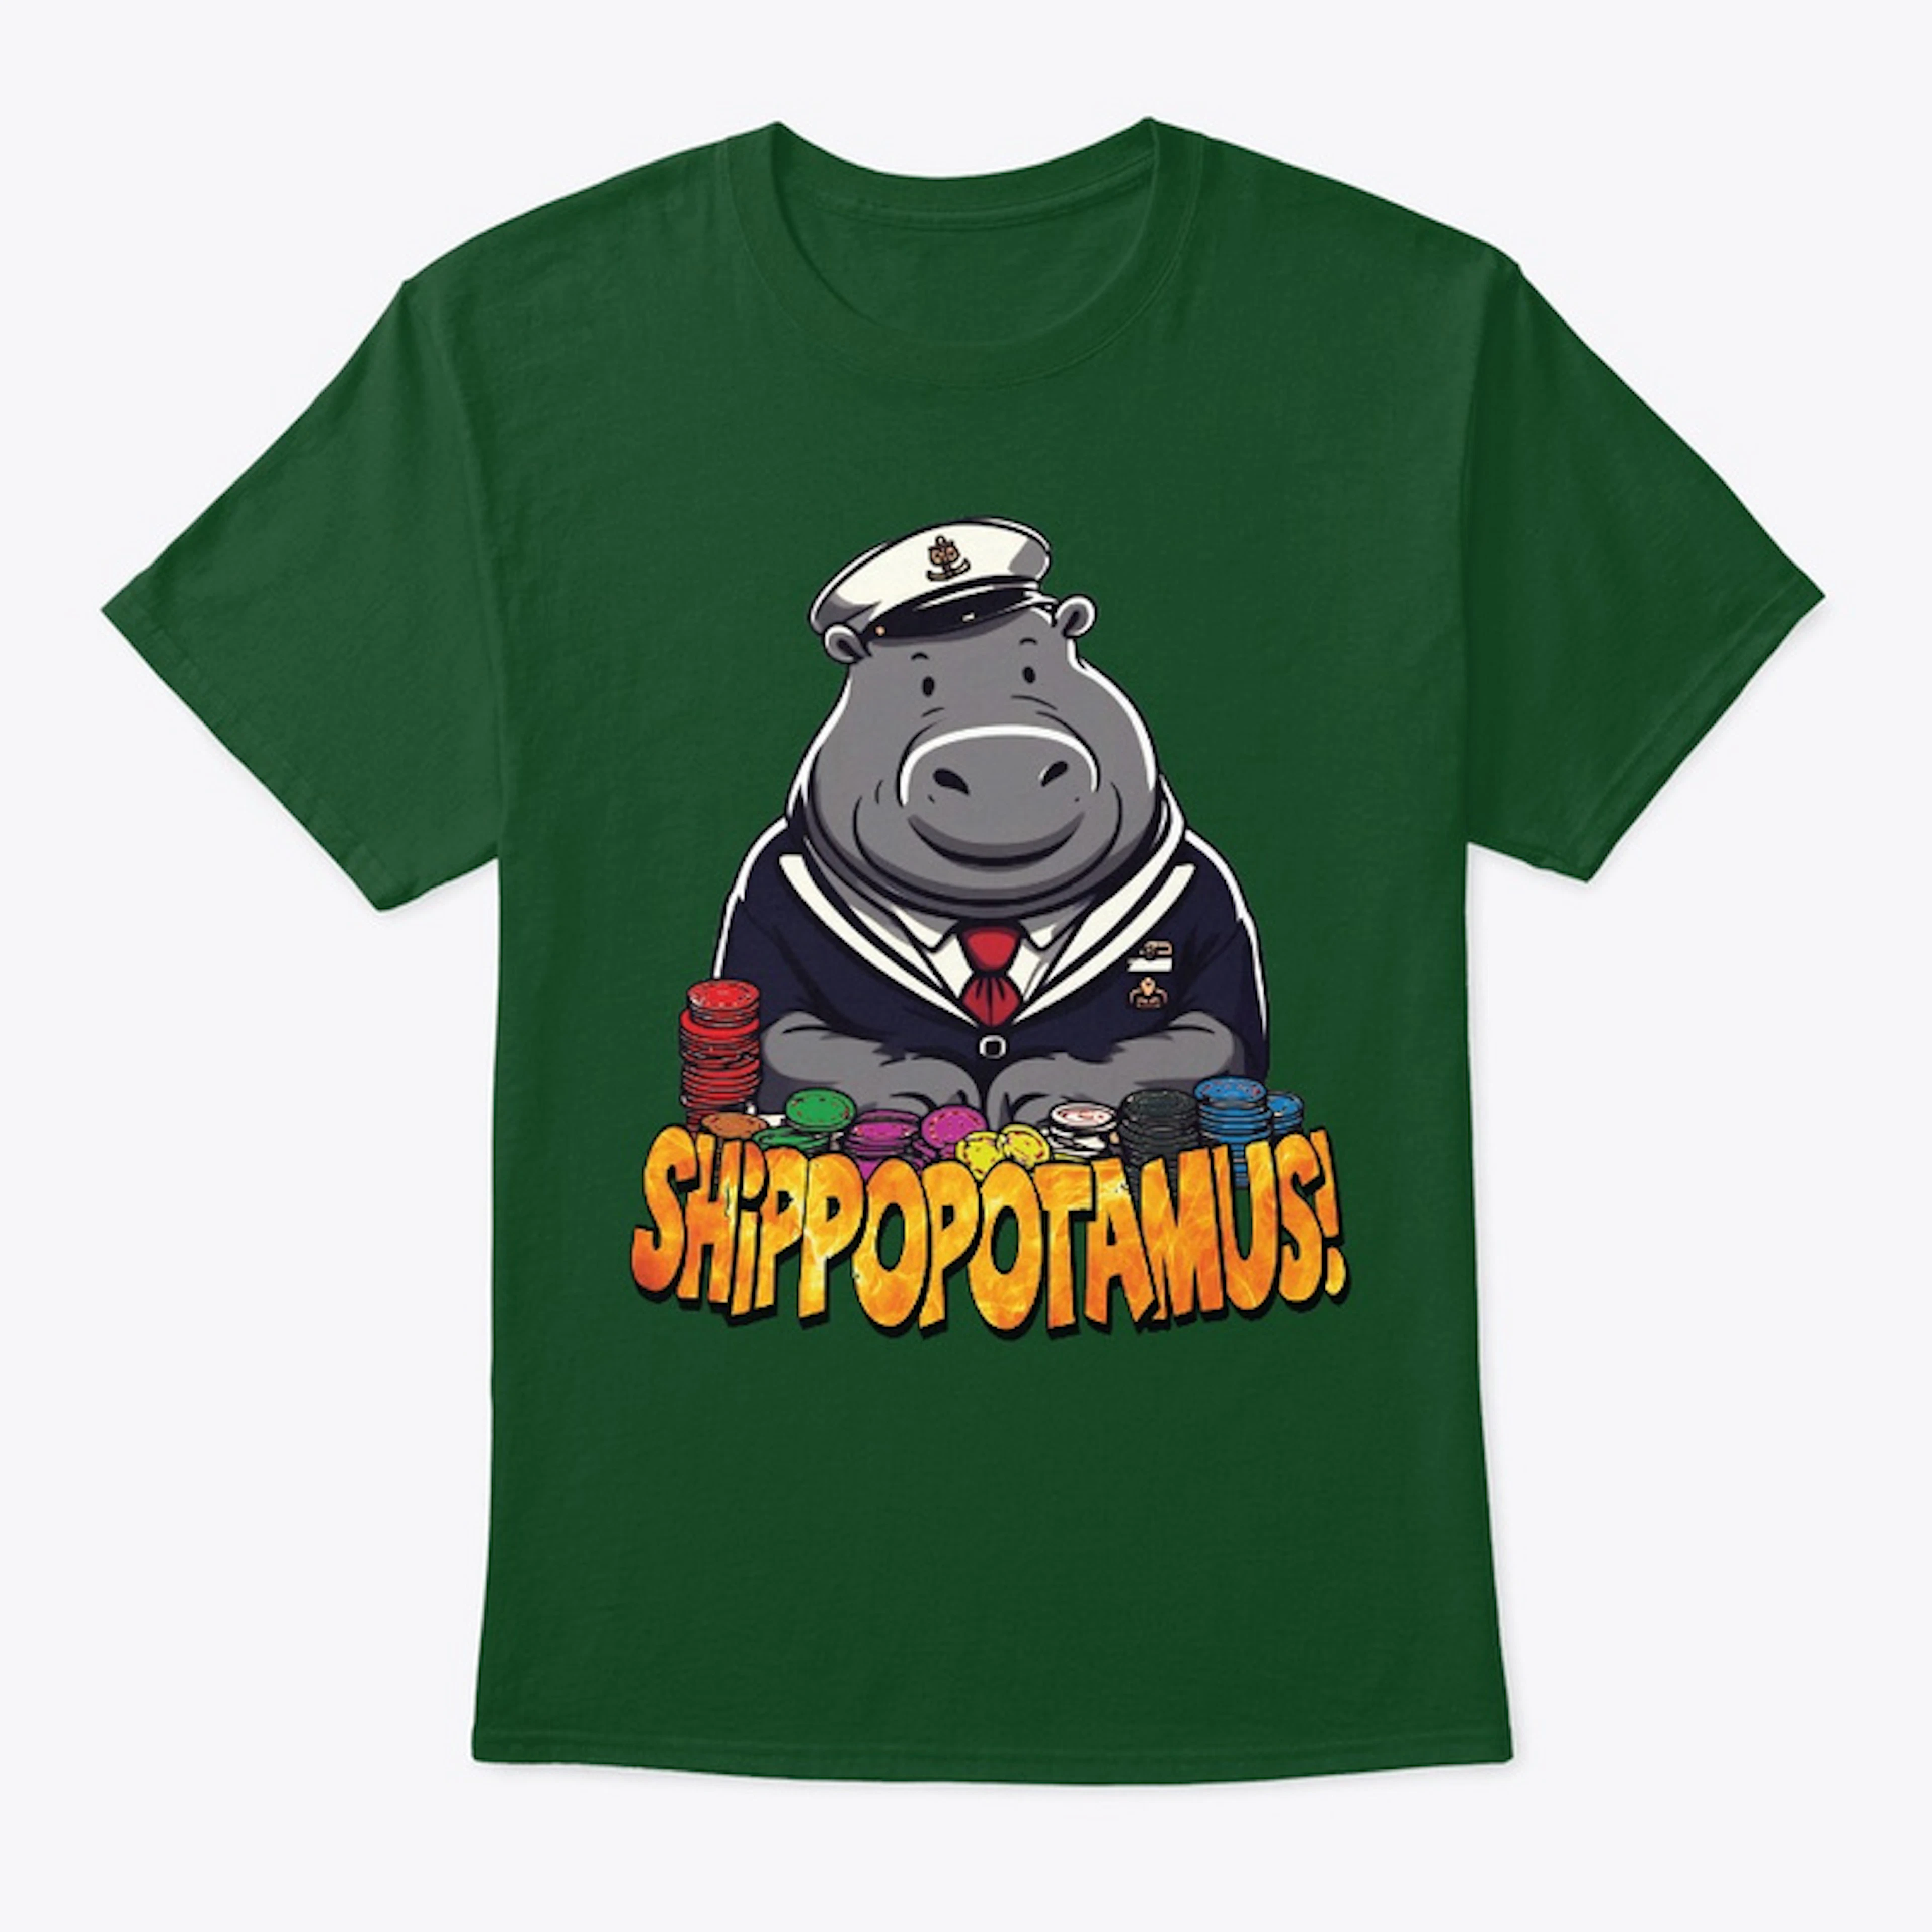 Shippopotamus